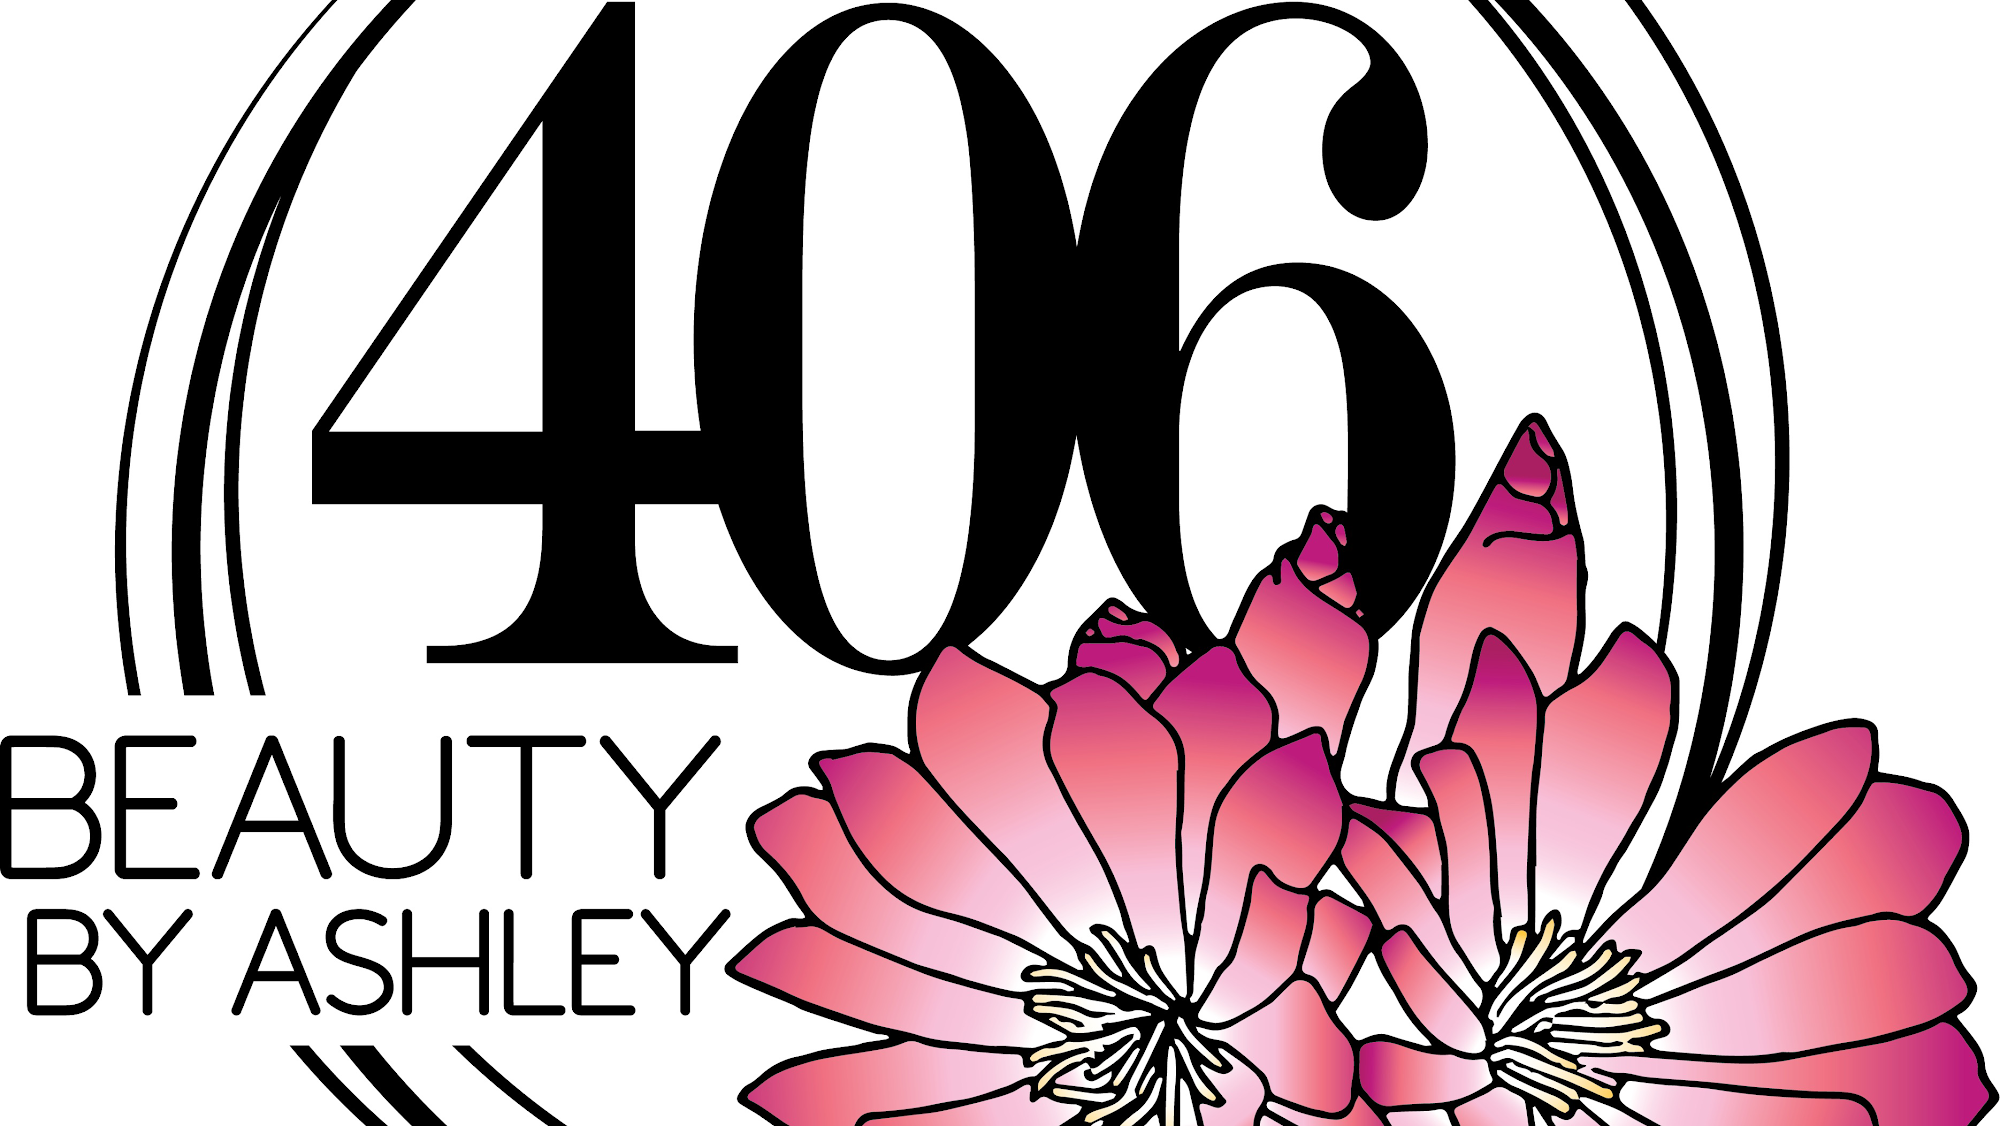 406 Beauty by Ashley